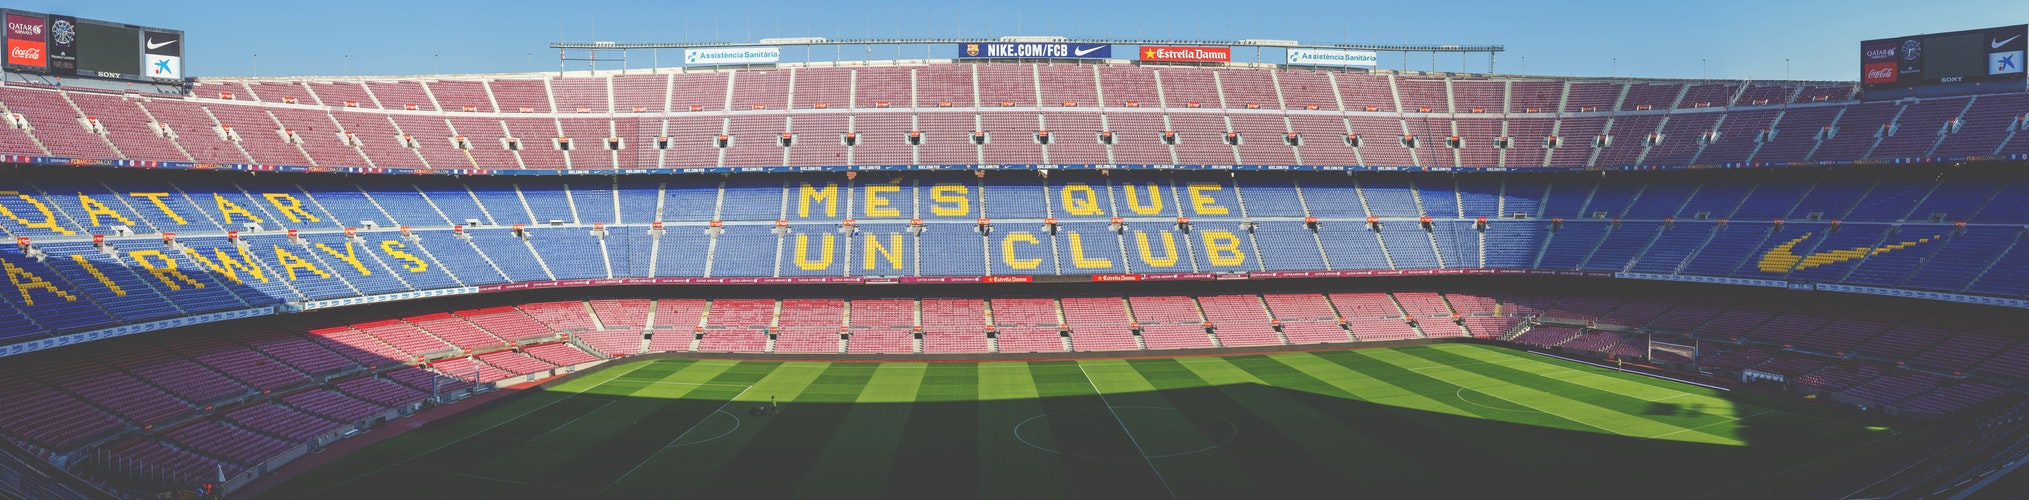 Jämställd FC Barcelona Stanley Black Decker Damfotboll Sponsring Sportidealisten Idrottsvetare SportJobb